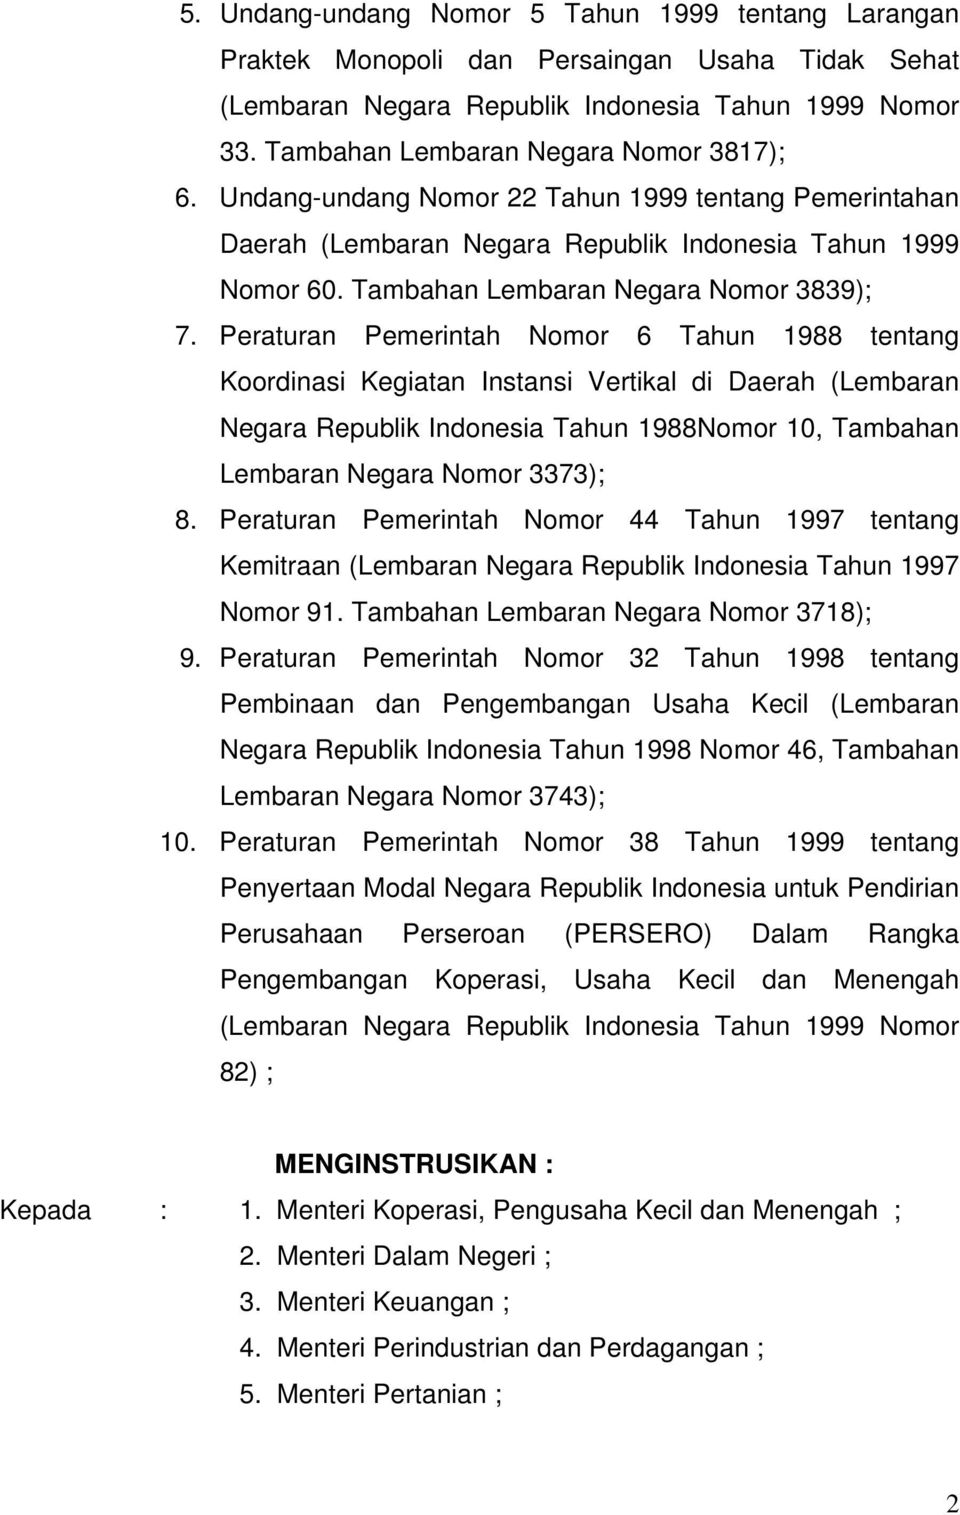 Peraturan Pemerintah Nomor 6 Tahun 1988 tentang Koordinasi Kegiatan Instansi Vertikal di Daerah (Lembaran Negara Republik Indonesia Tahun 1988Nomor 10, Tambahan Lembaran Negara Nomor 3373); 8.